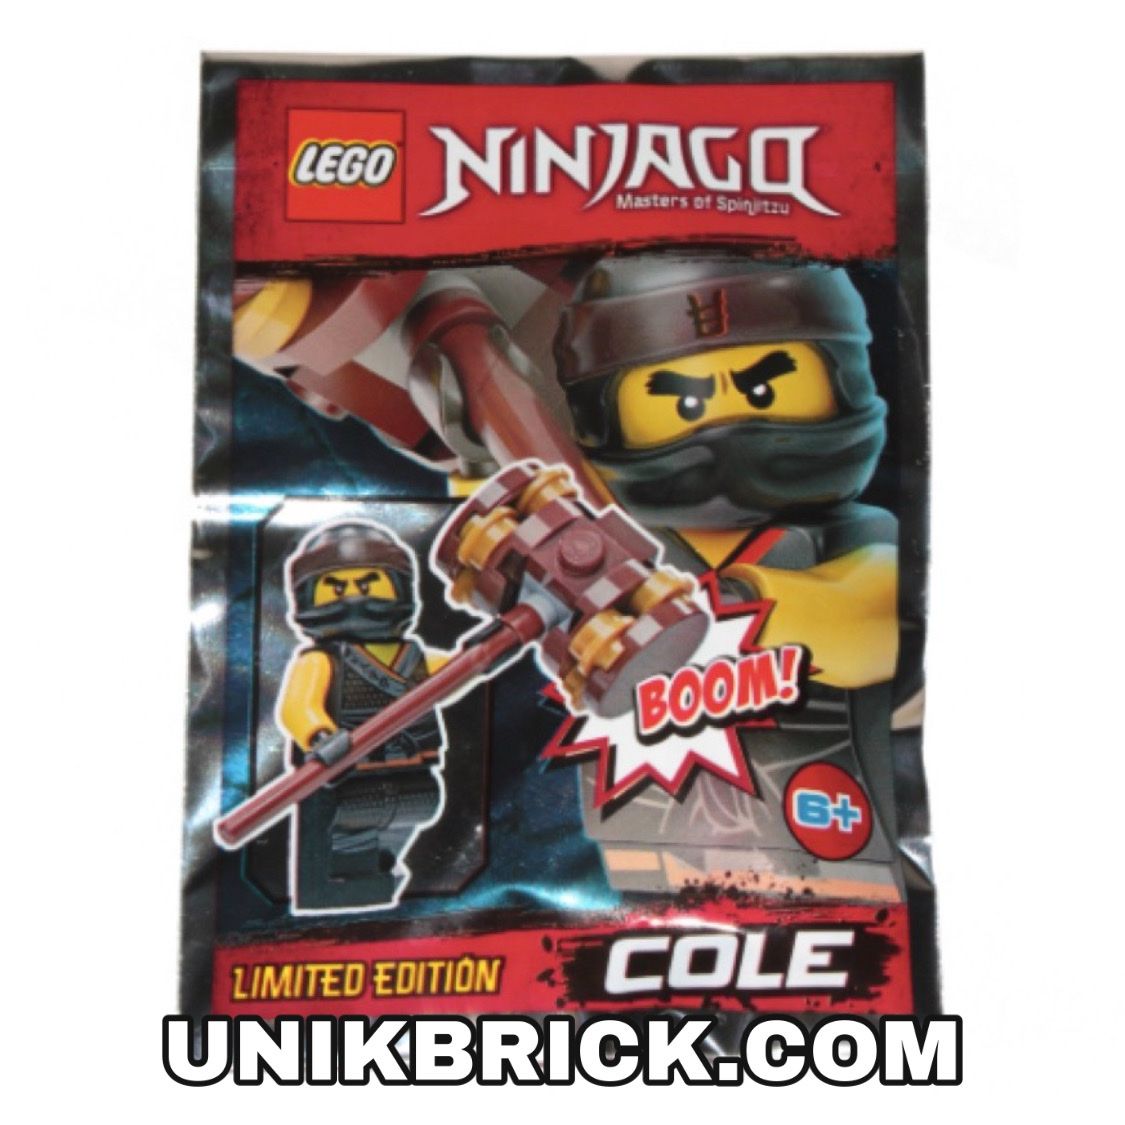 LEGO Ninjago 891839 Cole Foil Pack Polybag